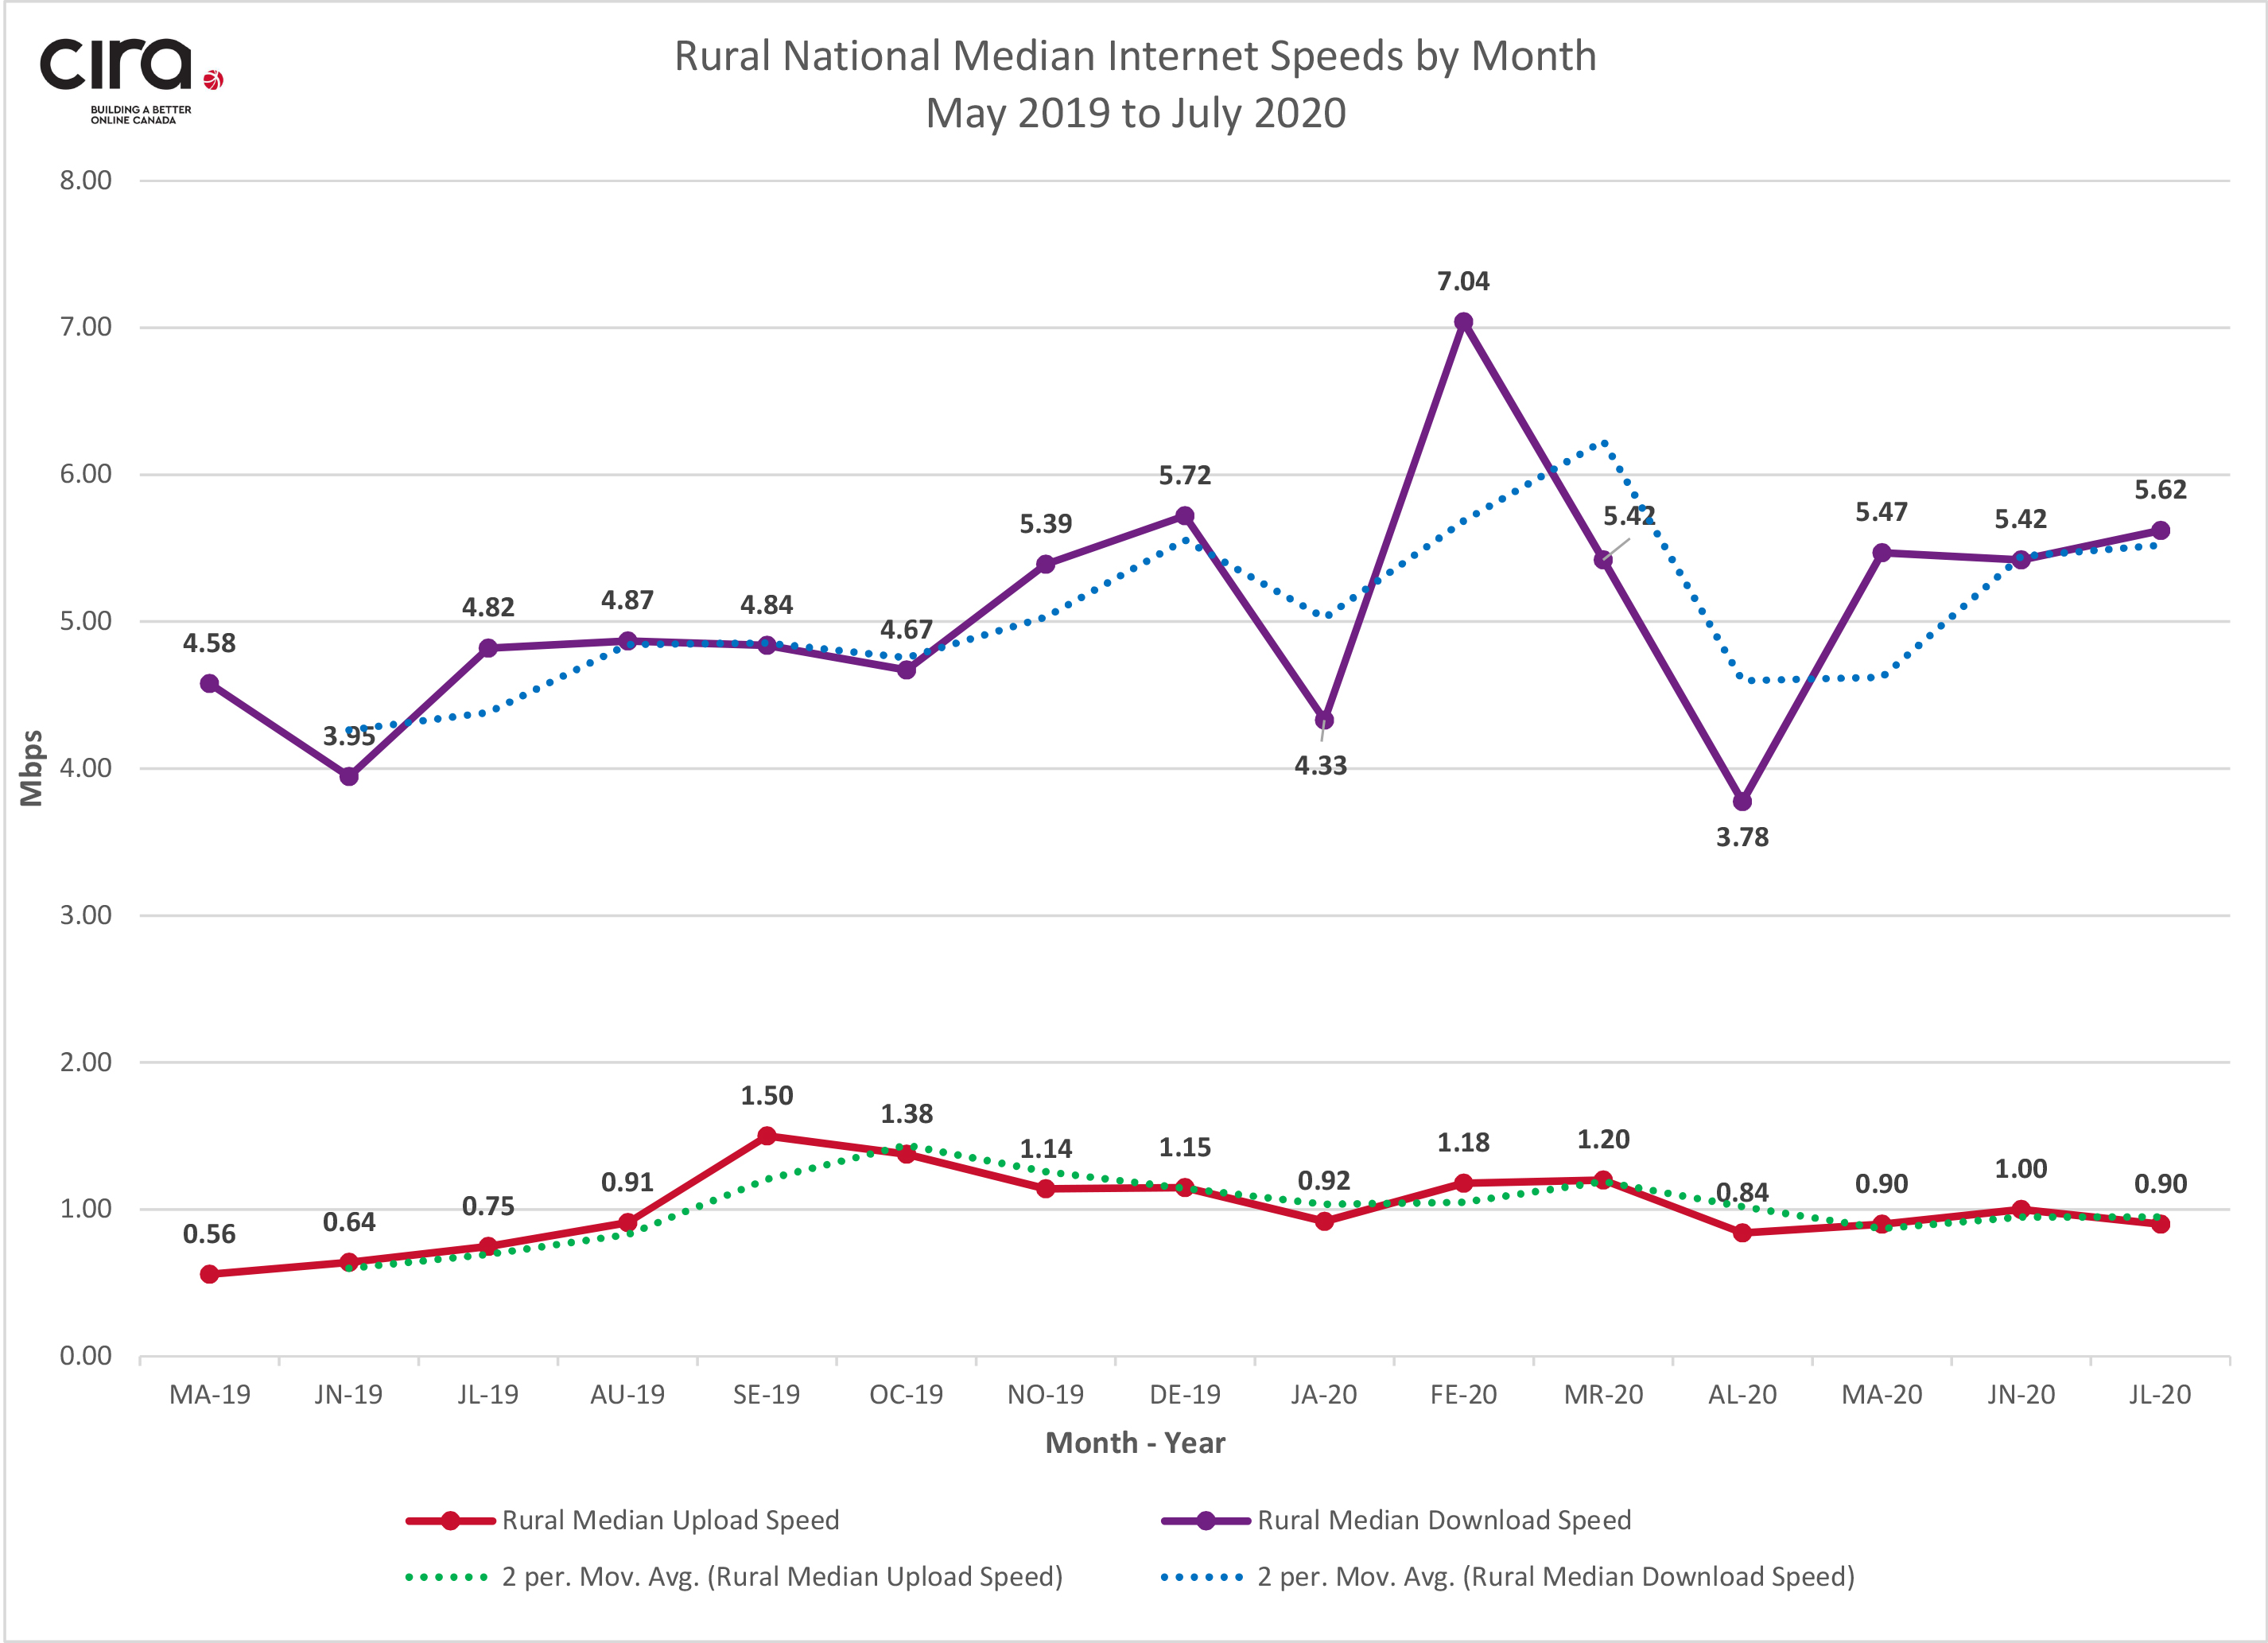 Figure 2 - Rural Median Speeds